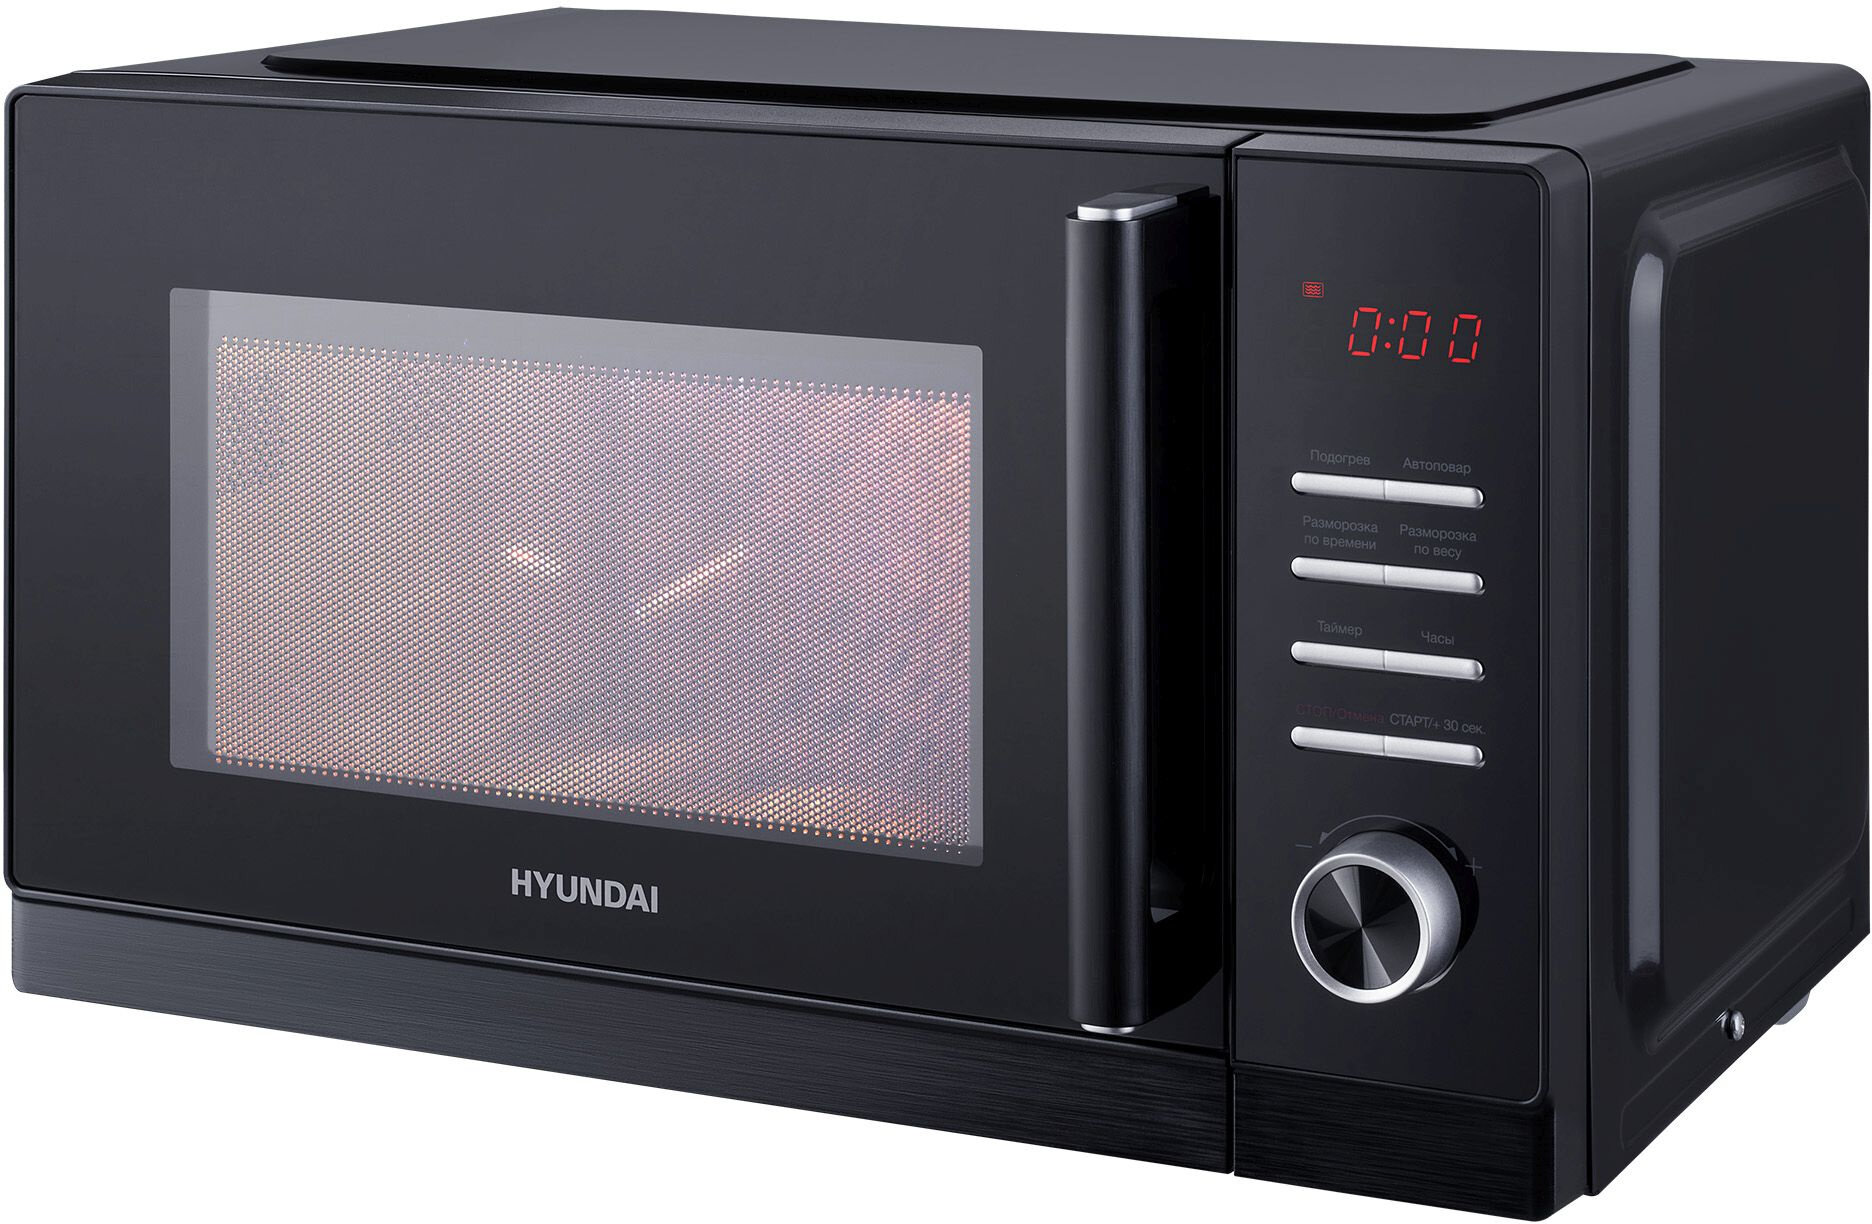 Микроволновая печь Hyundai HYM-D3013, черный